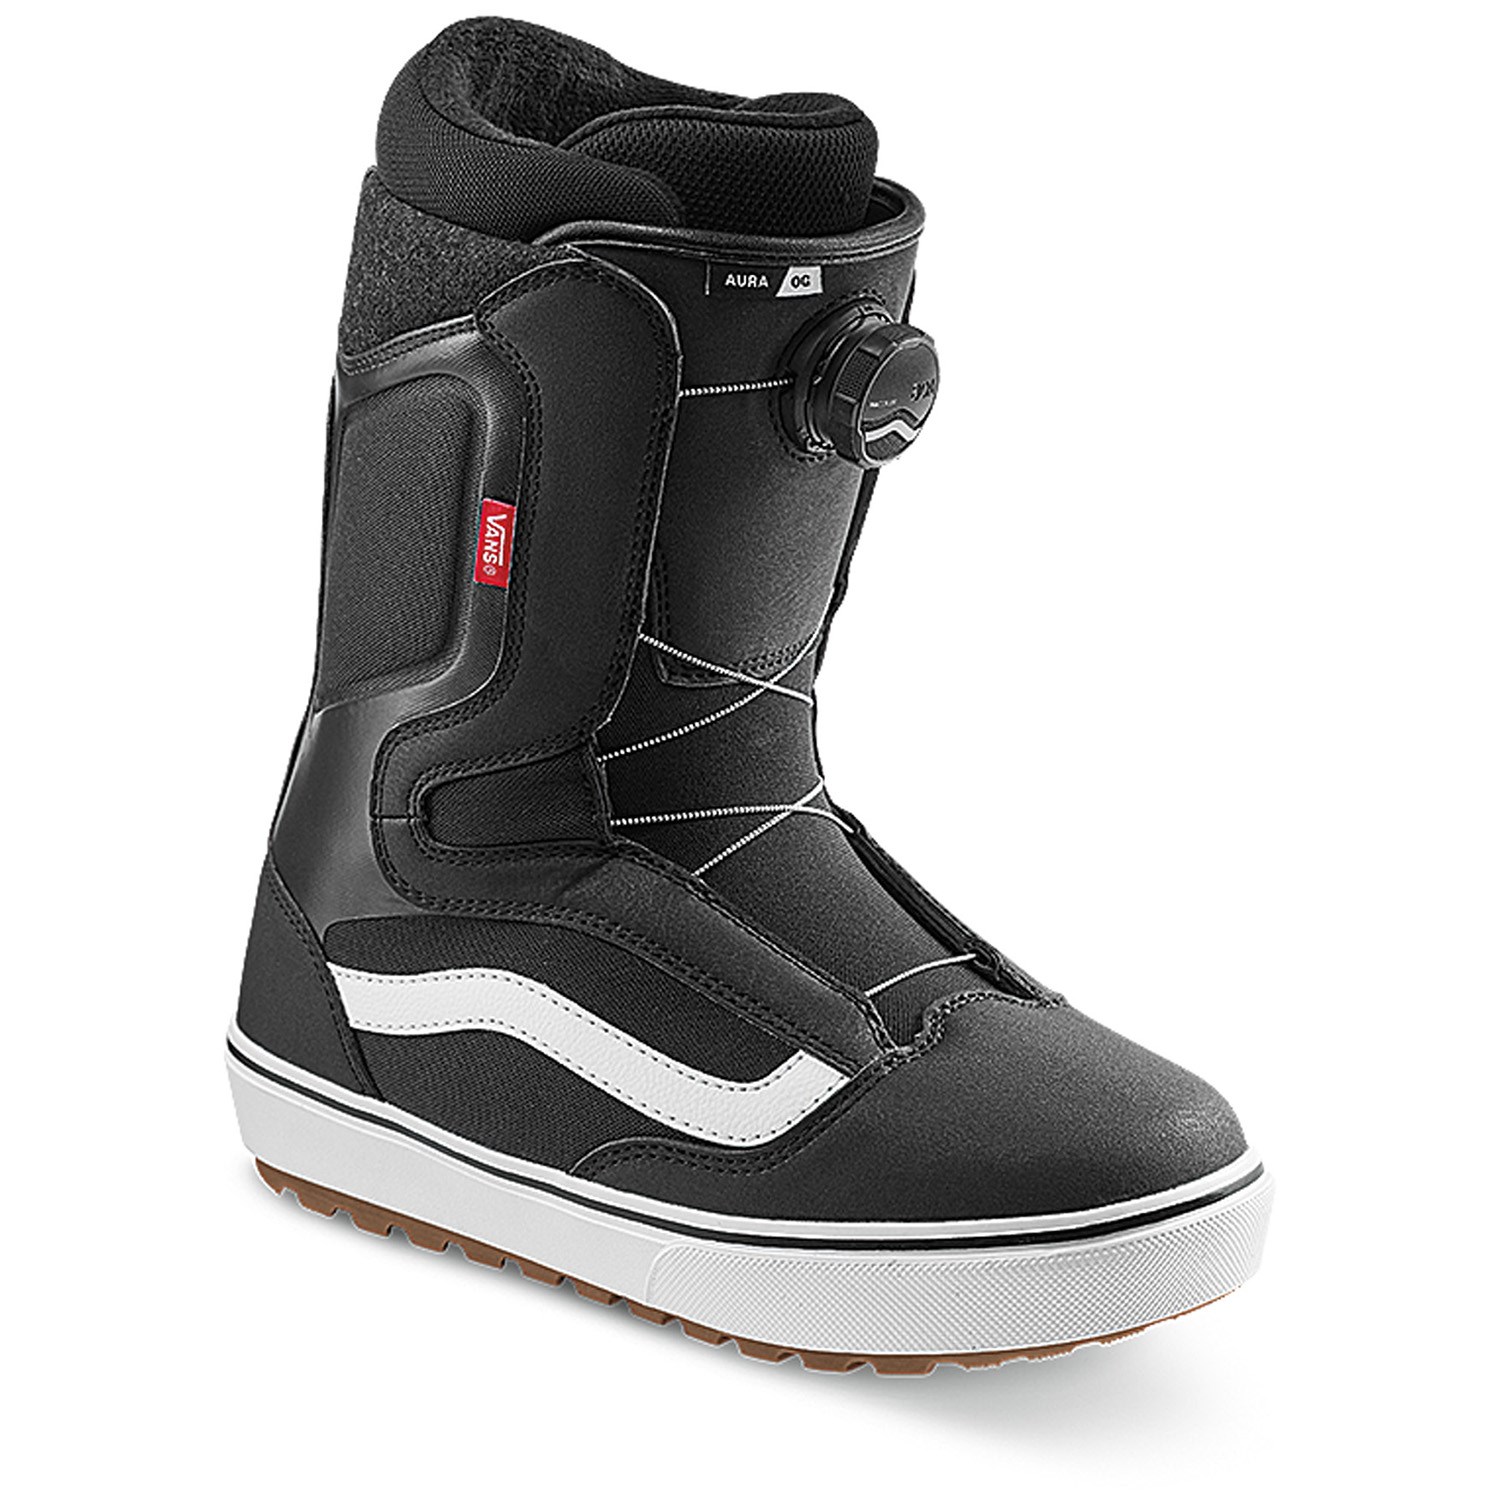 Onophoudelijk Uiterlijk knijpen Vans Aura OG Snowboard Boots | evo